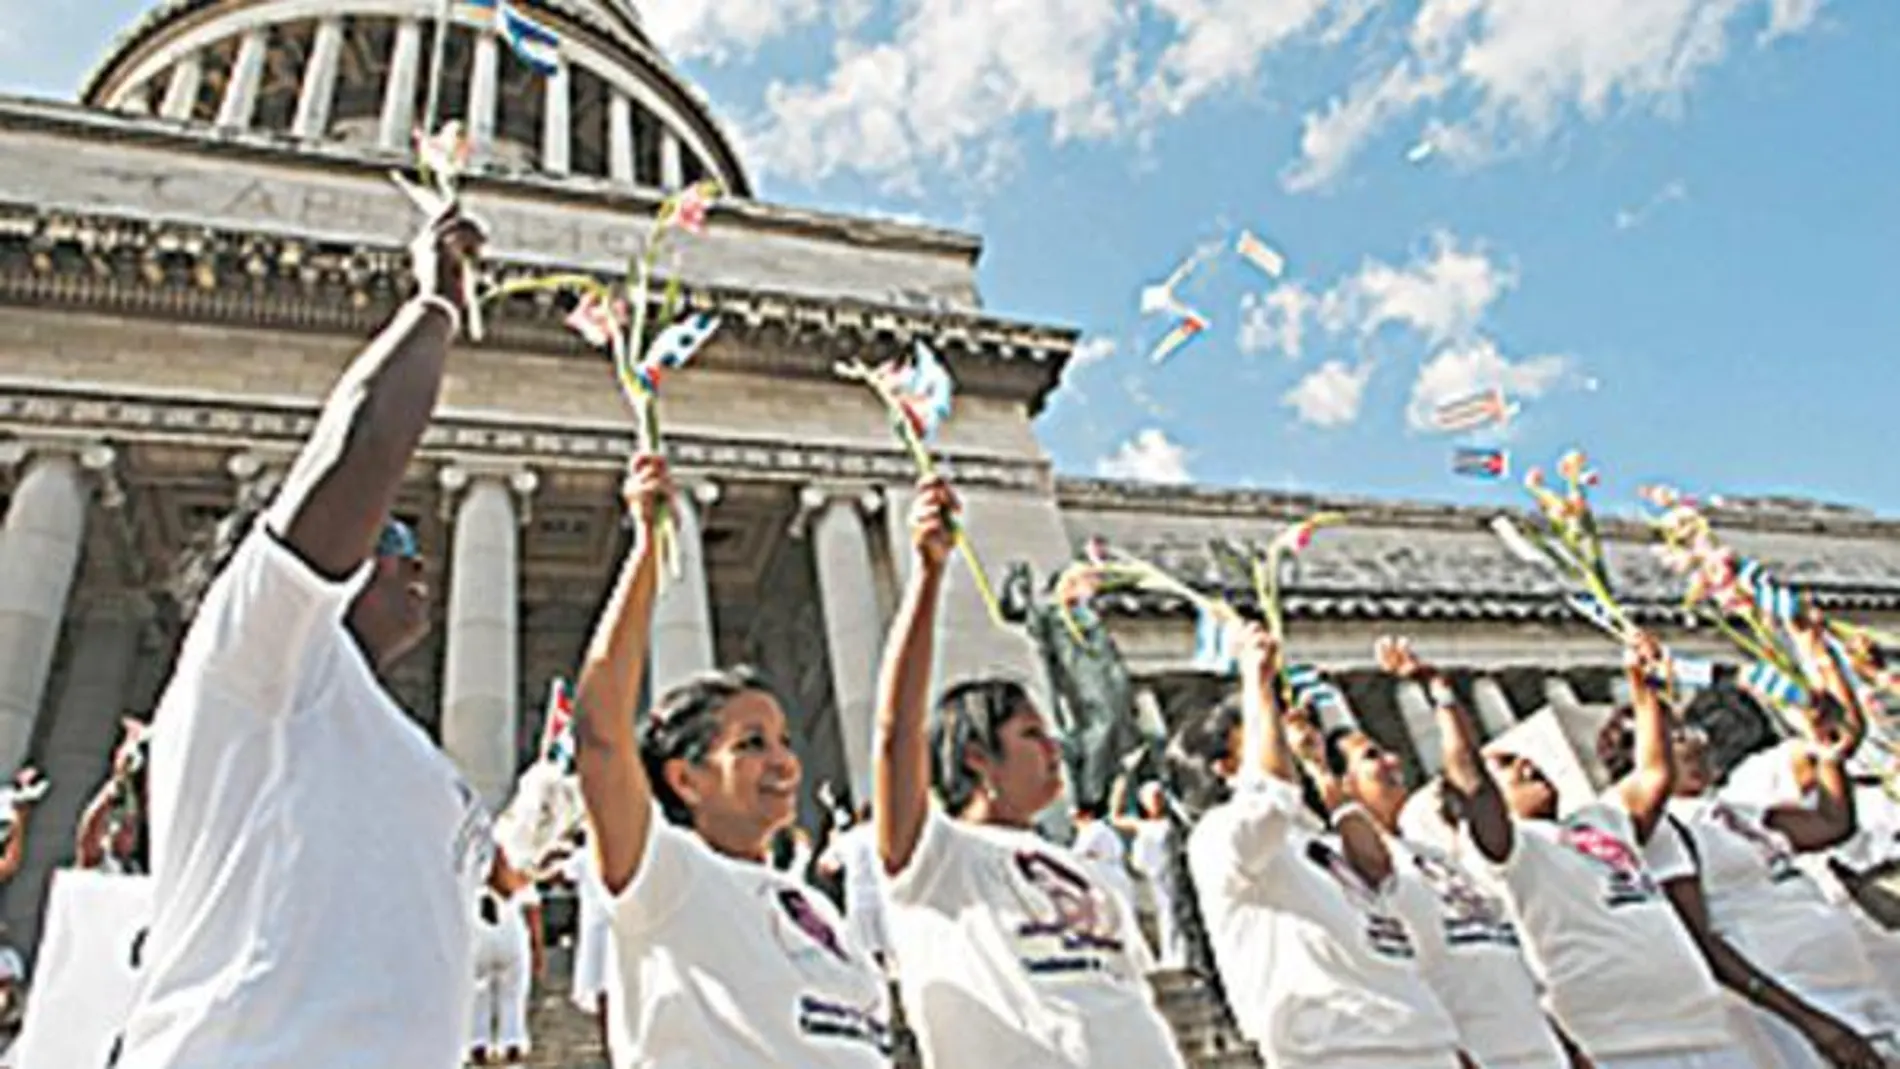 Damas de blanco, Cuba 2005(fot.1); Leyla Zana, Kurdistán 1995 (fot.2); Hu Jia, China 2008 (fot.3)